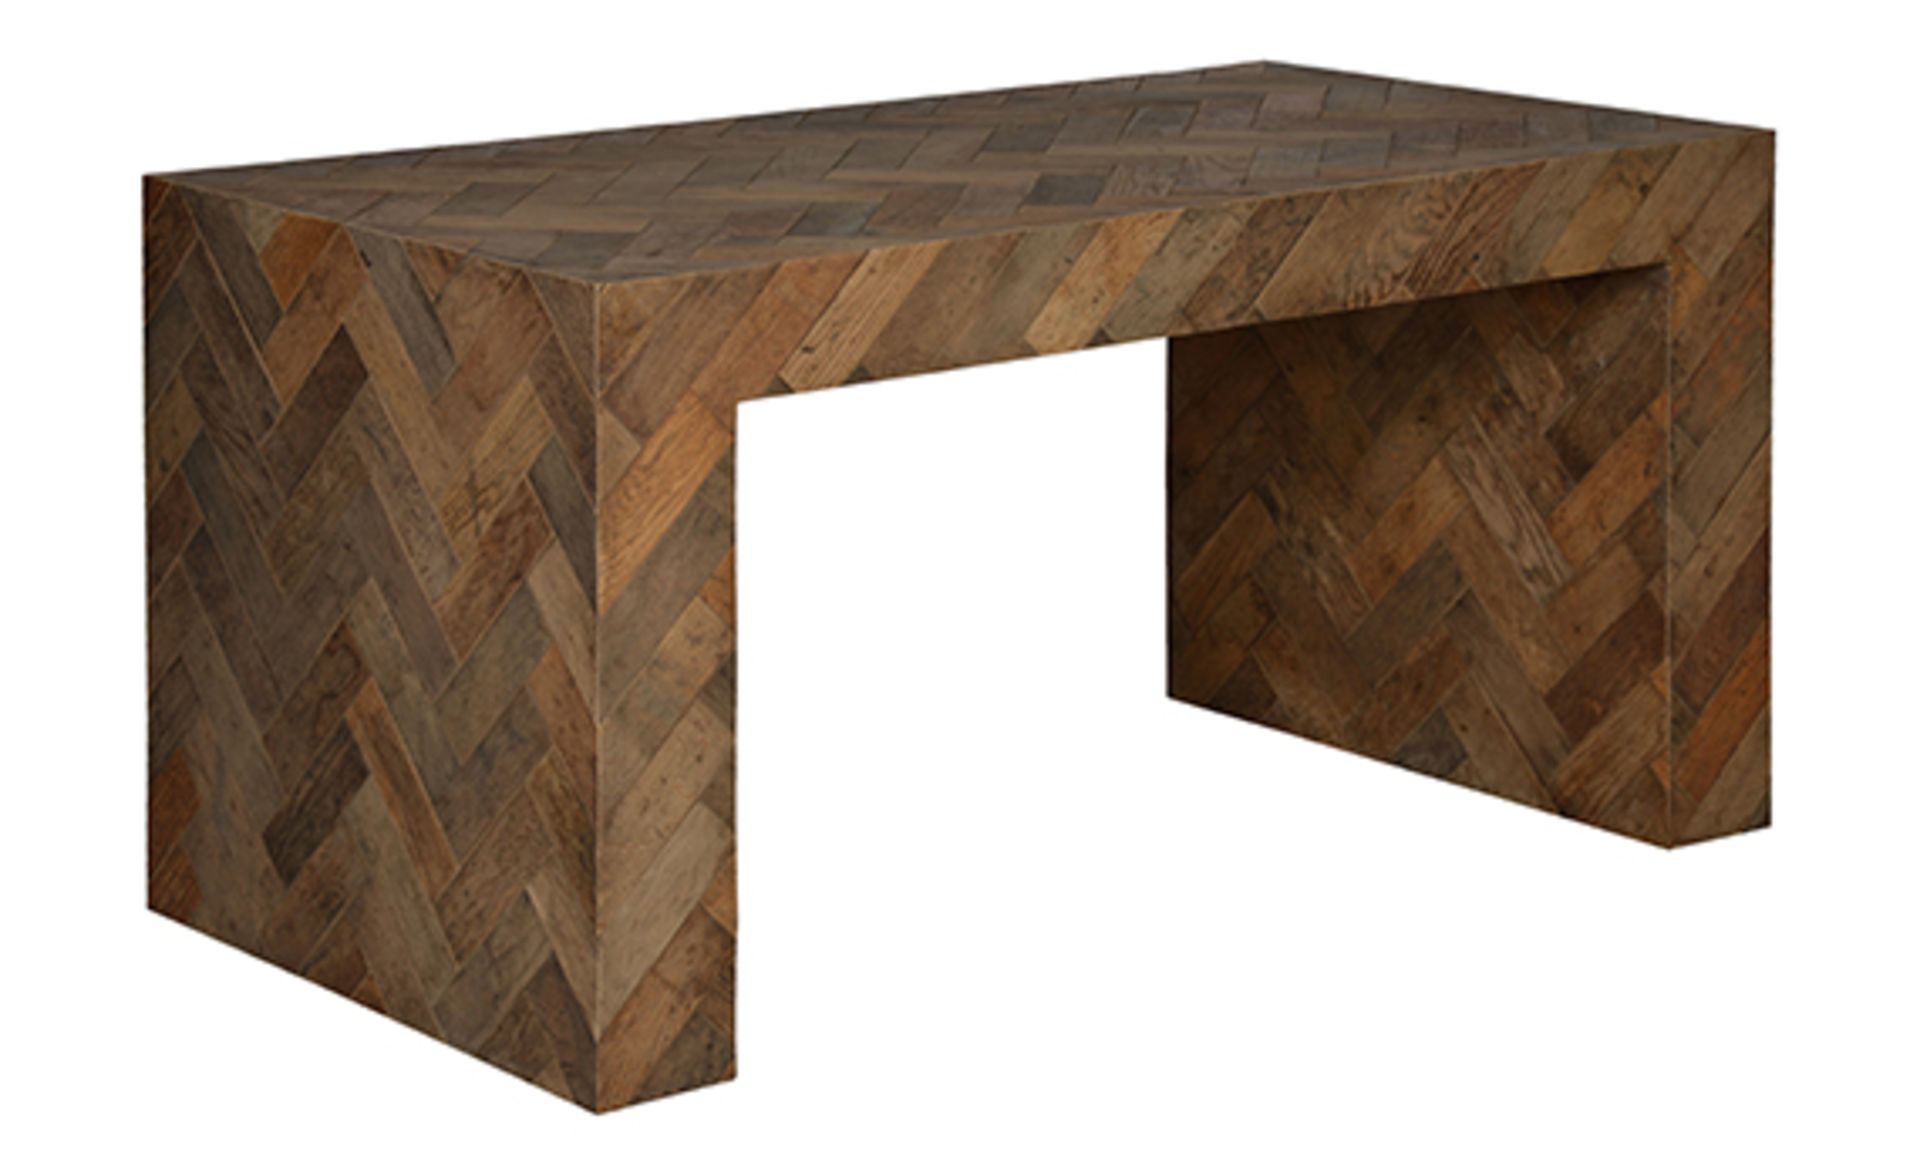 Dancefloor Desk The Dancefloor cabinetry collection has been created with reclaimed parquetry oak,